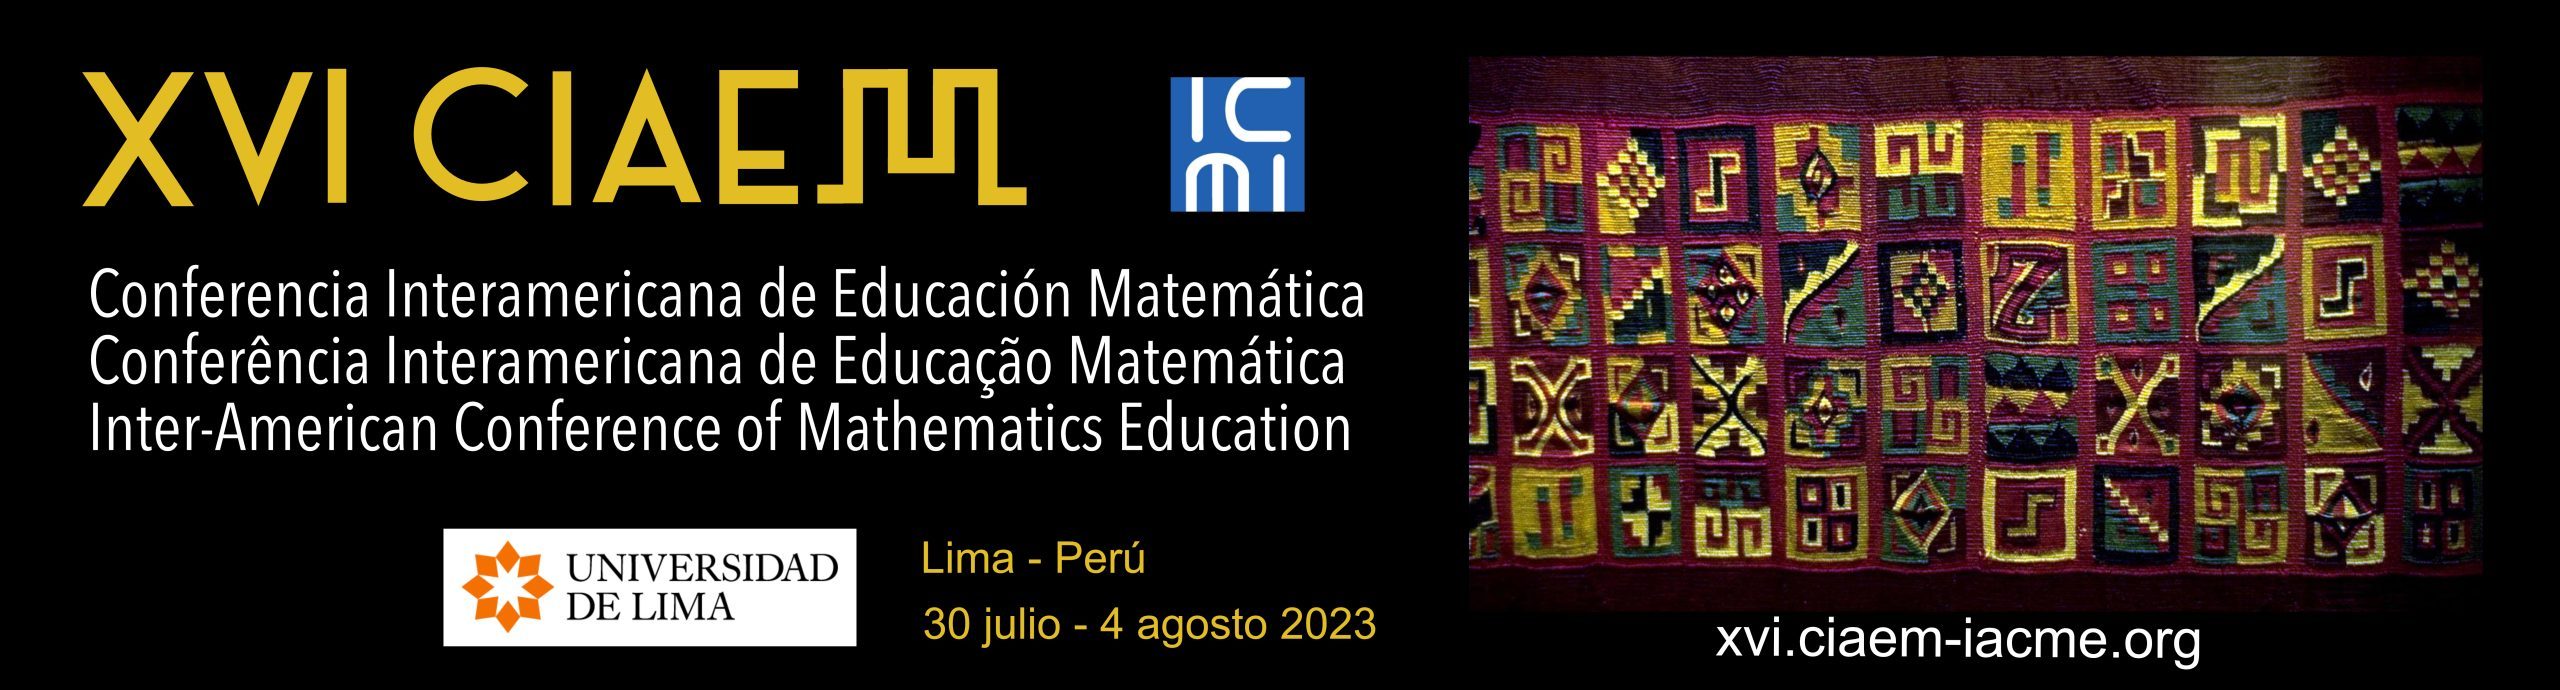 XVI Conferencia de Educación Matemática (XVI CIAEM)